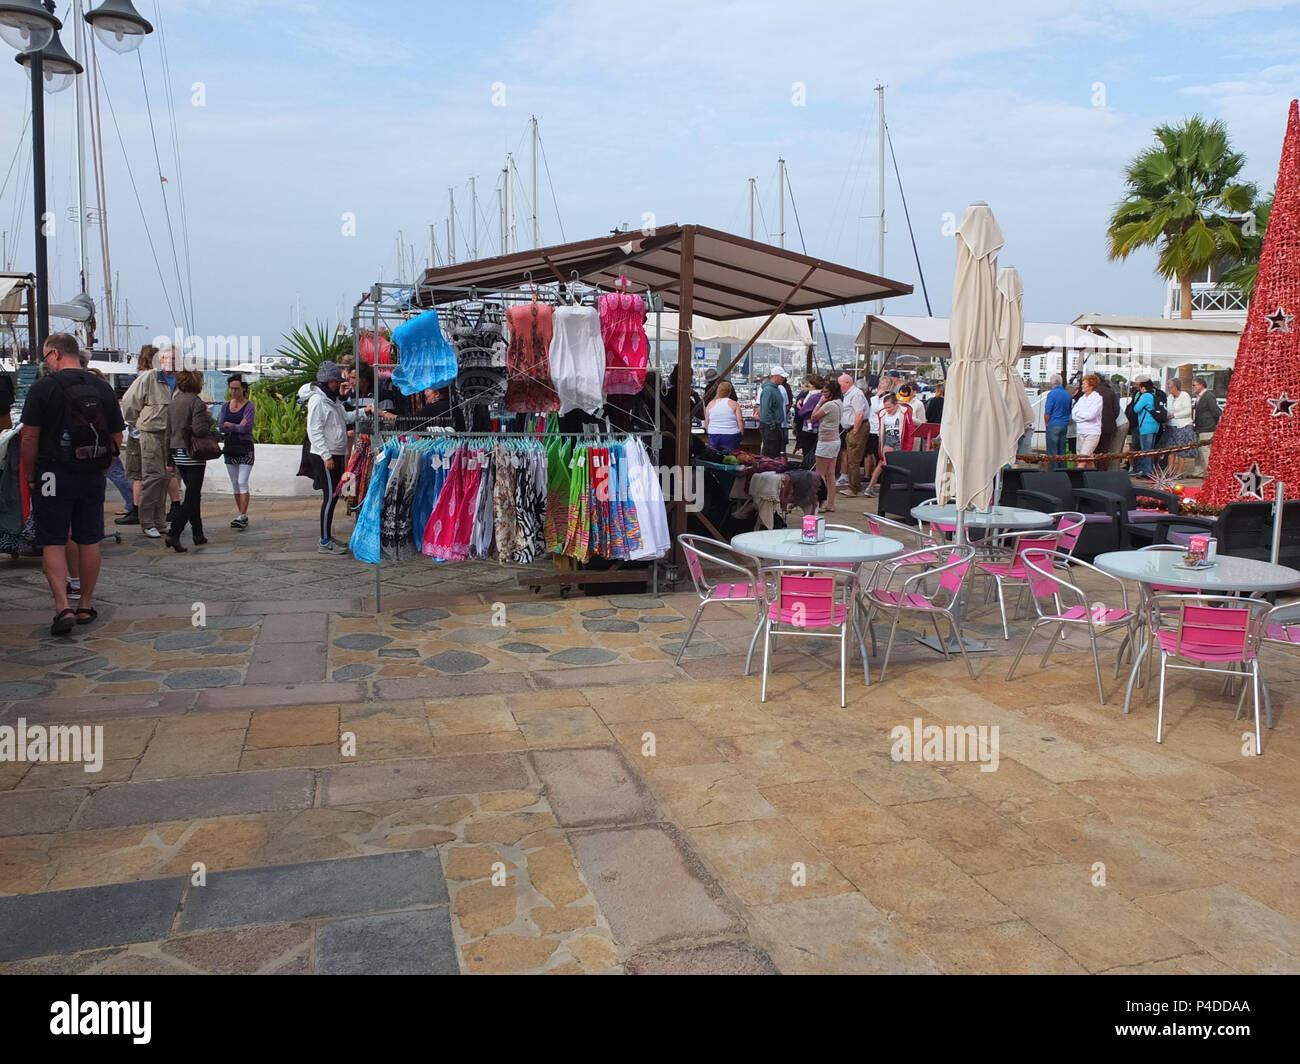 Lanzarote, Spanien - Dezember 11, 2013: Ein typisch spanischen Markt mit Menschen surfen durch die Marina in Lanzarote. Stockfoto